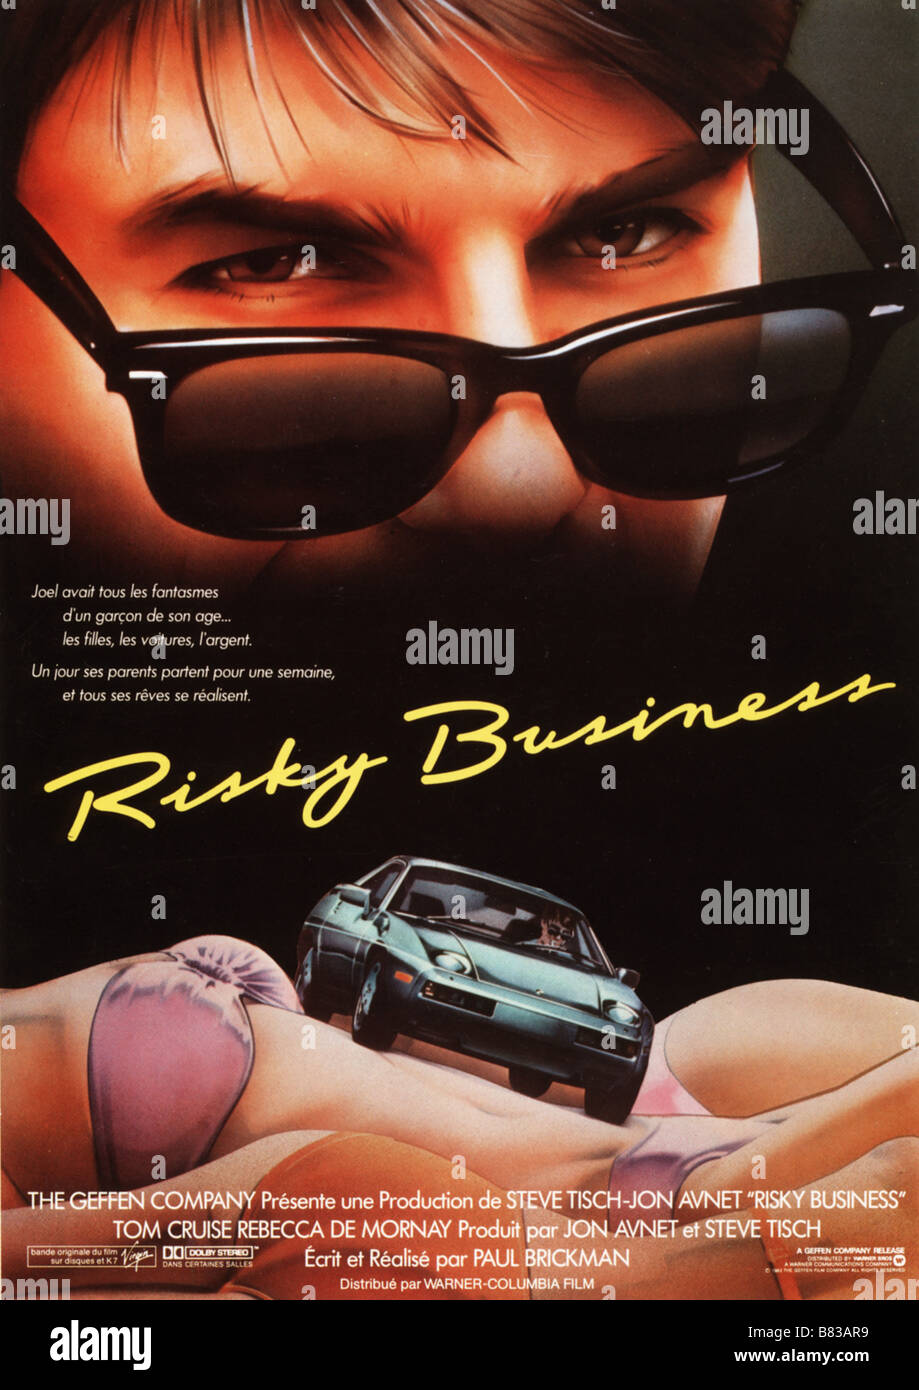 Business rischioso (1983) USA Tom Cruise Affiche Poster , Direttore: Paolo Brickman Foto Stock